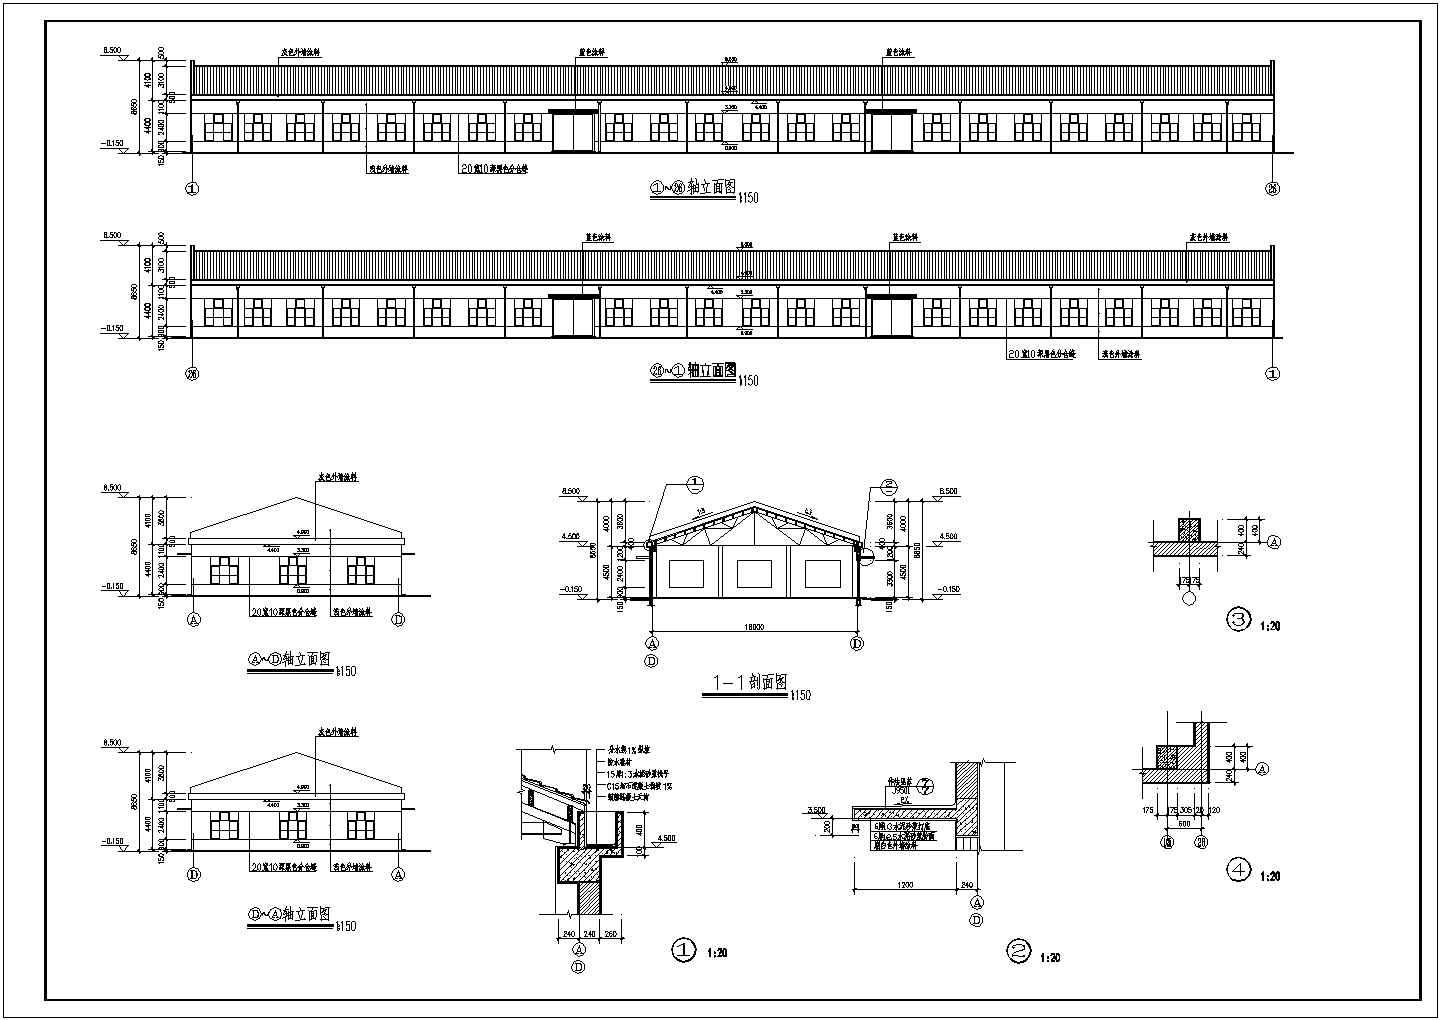 某地工业集中区单层排架厂房建筑设计图纸